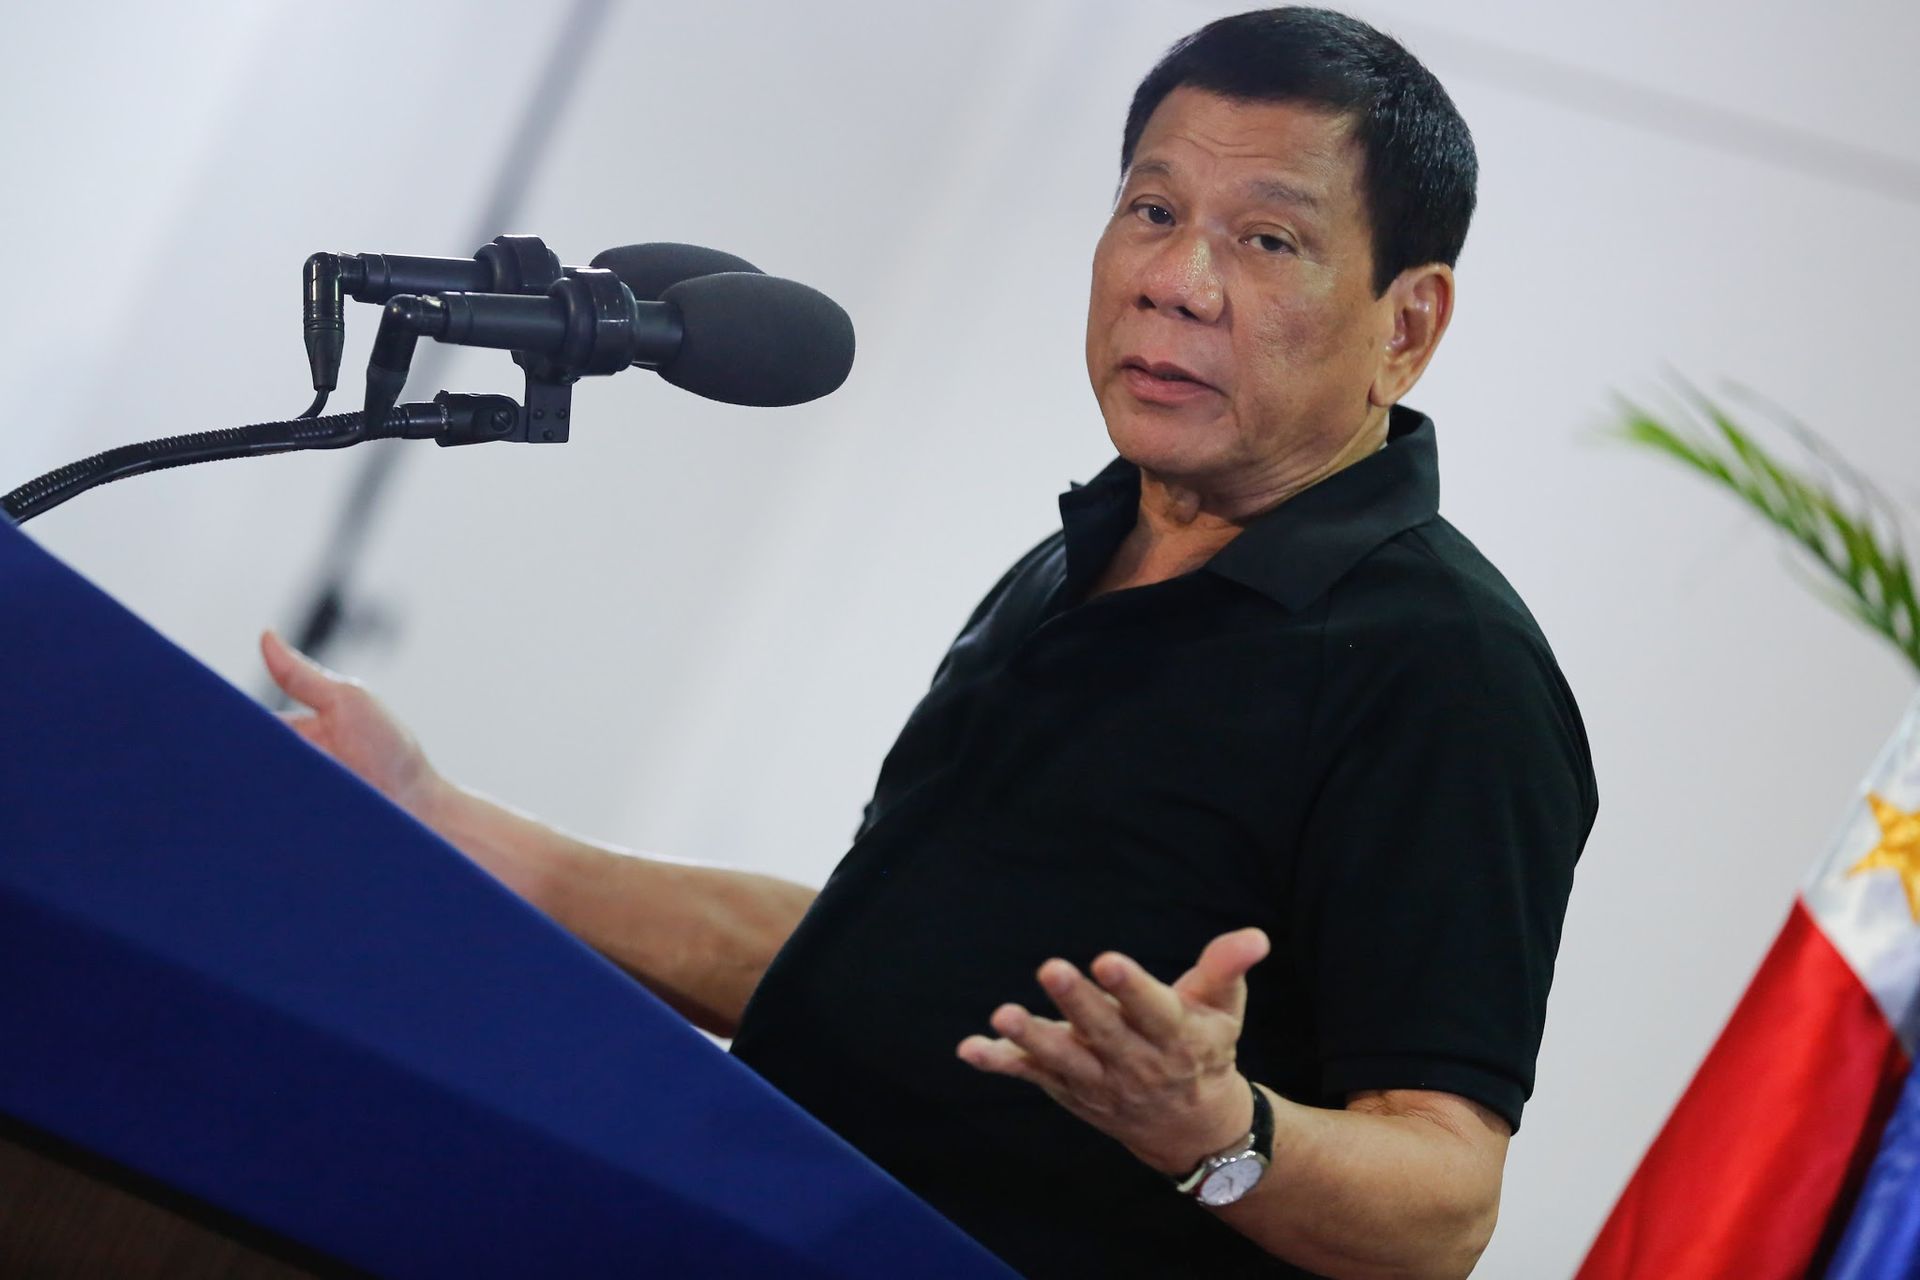 Rodrigo Duterte has moved closer to China Image fair use